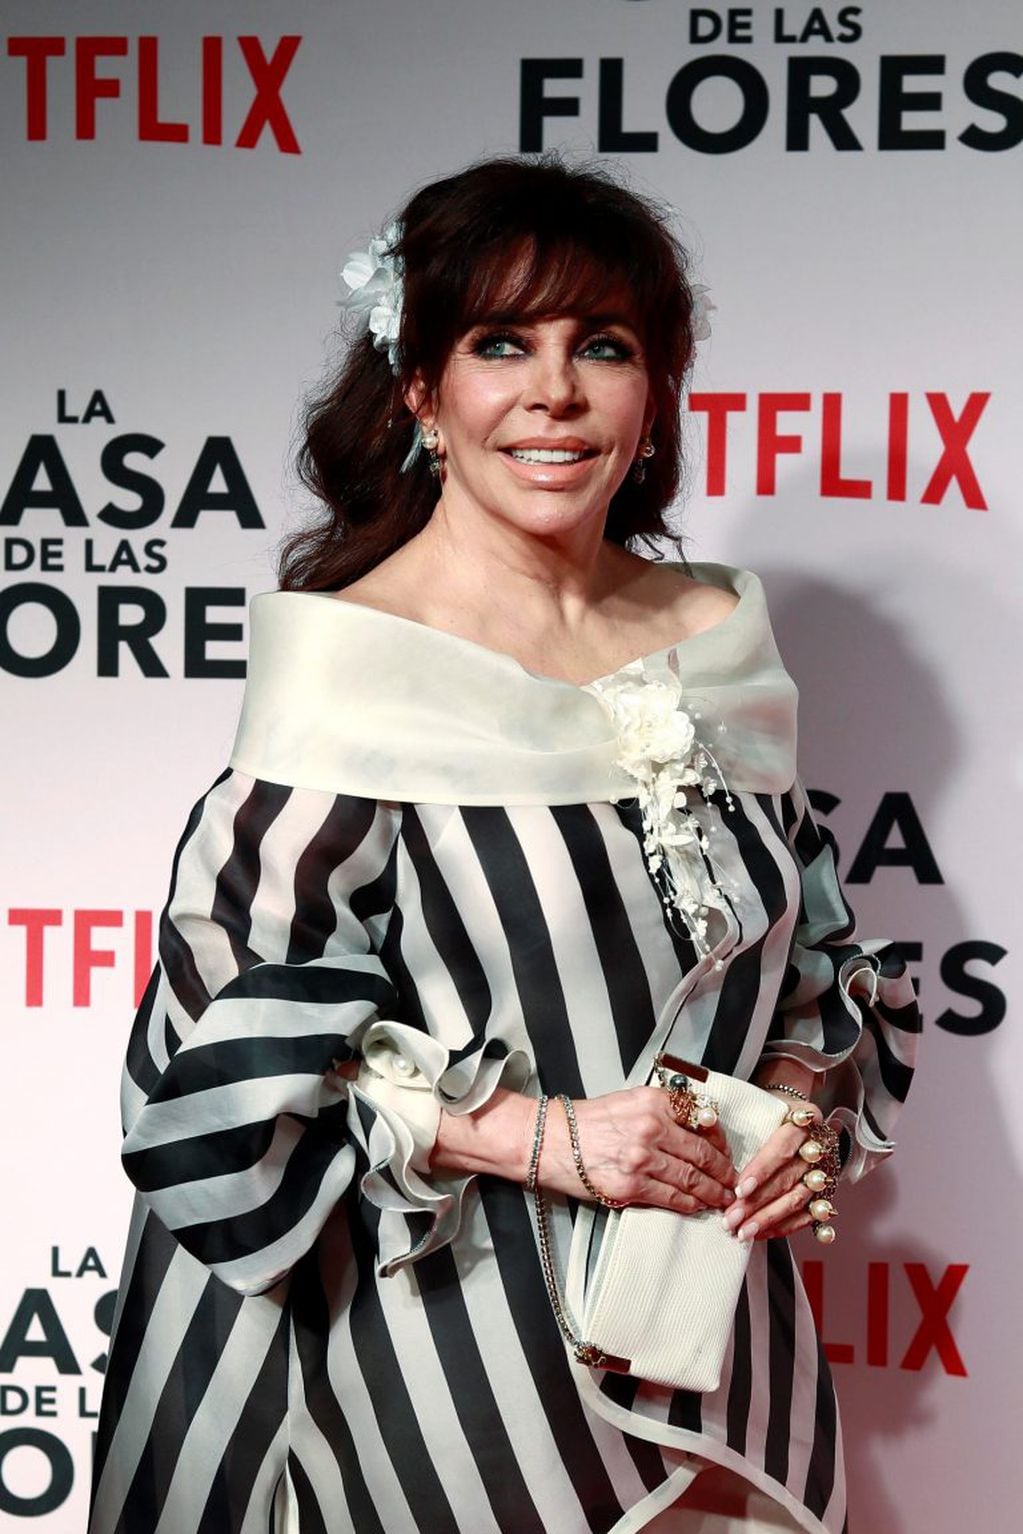 La actriz mexicana Verónica Castro posa durante la alfombra roja de la presentación de la nueva serie de Netflix "La Casa de las Flores".